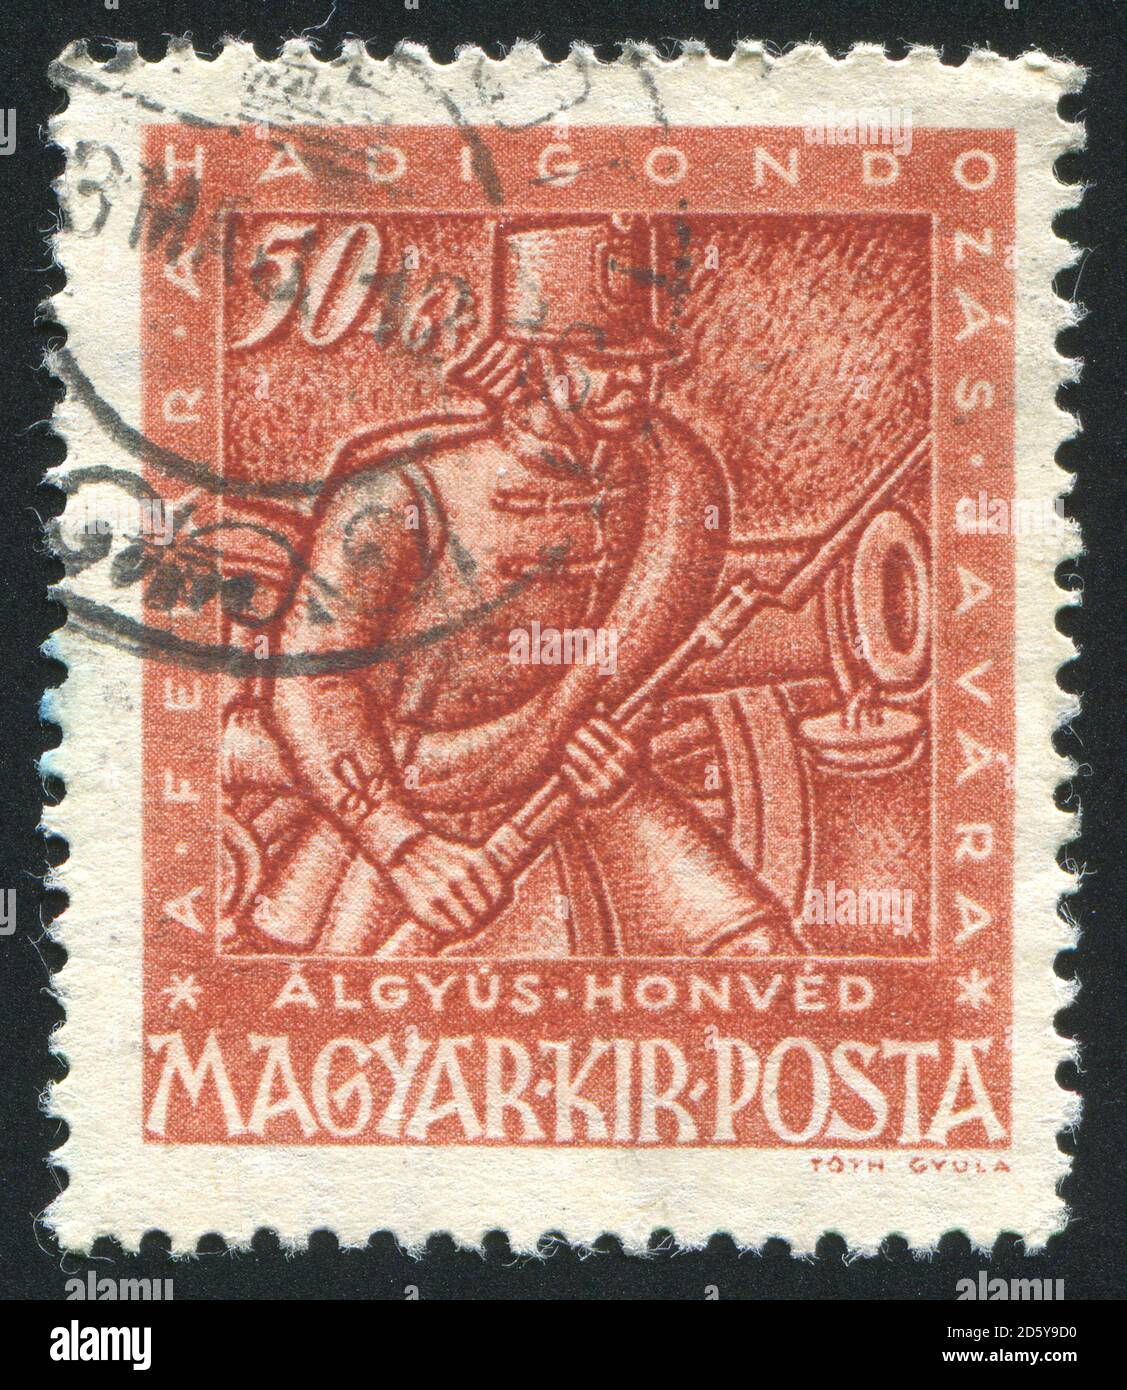 UNGARN - UM 1943: Briefmarke gedruckt von Ungarn, zeigt Artilleryman, um 1943 Stockfoto